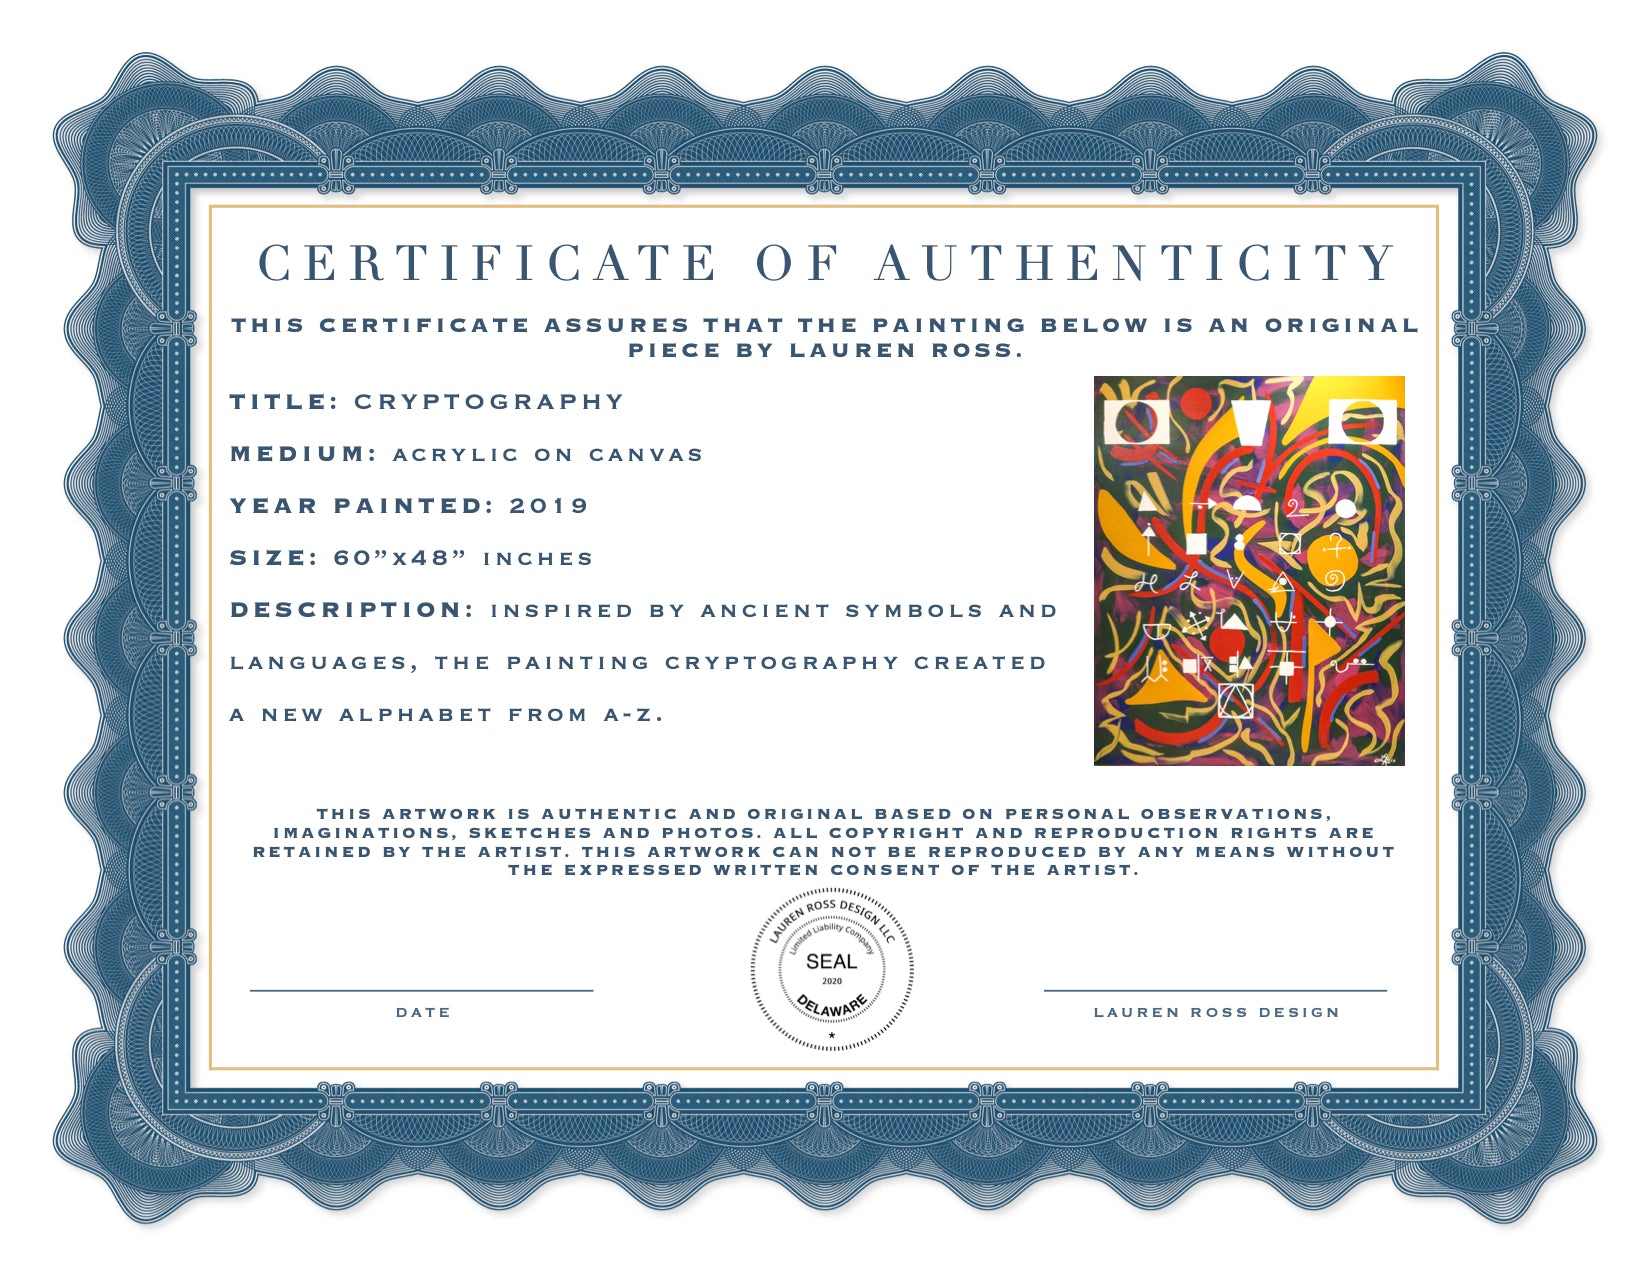 certificate-of-authenticity-lauren-ross-design